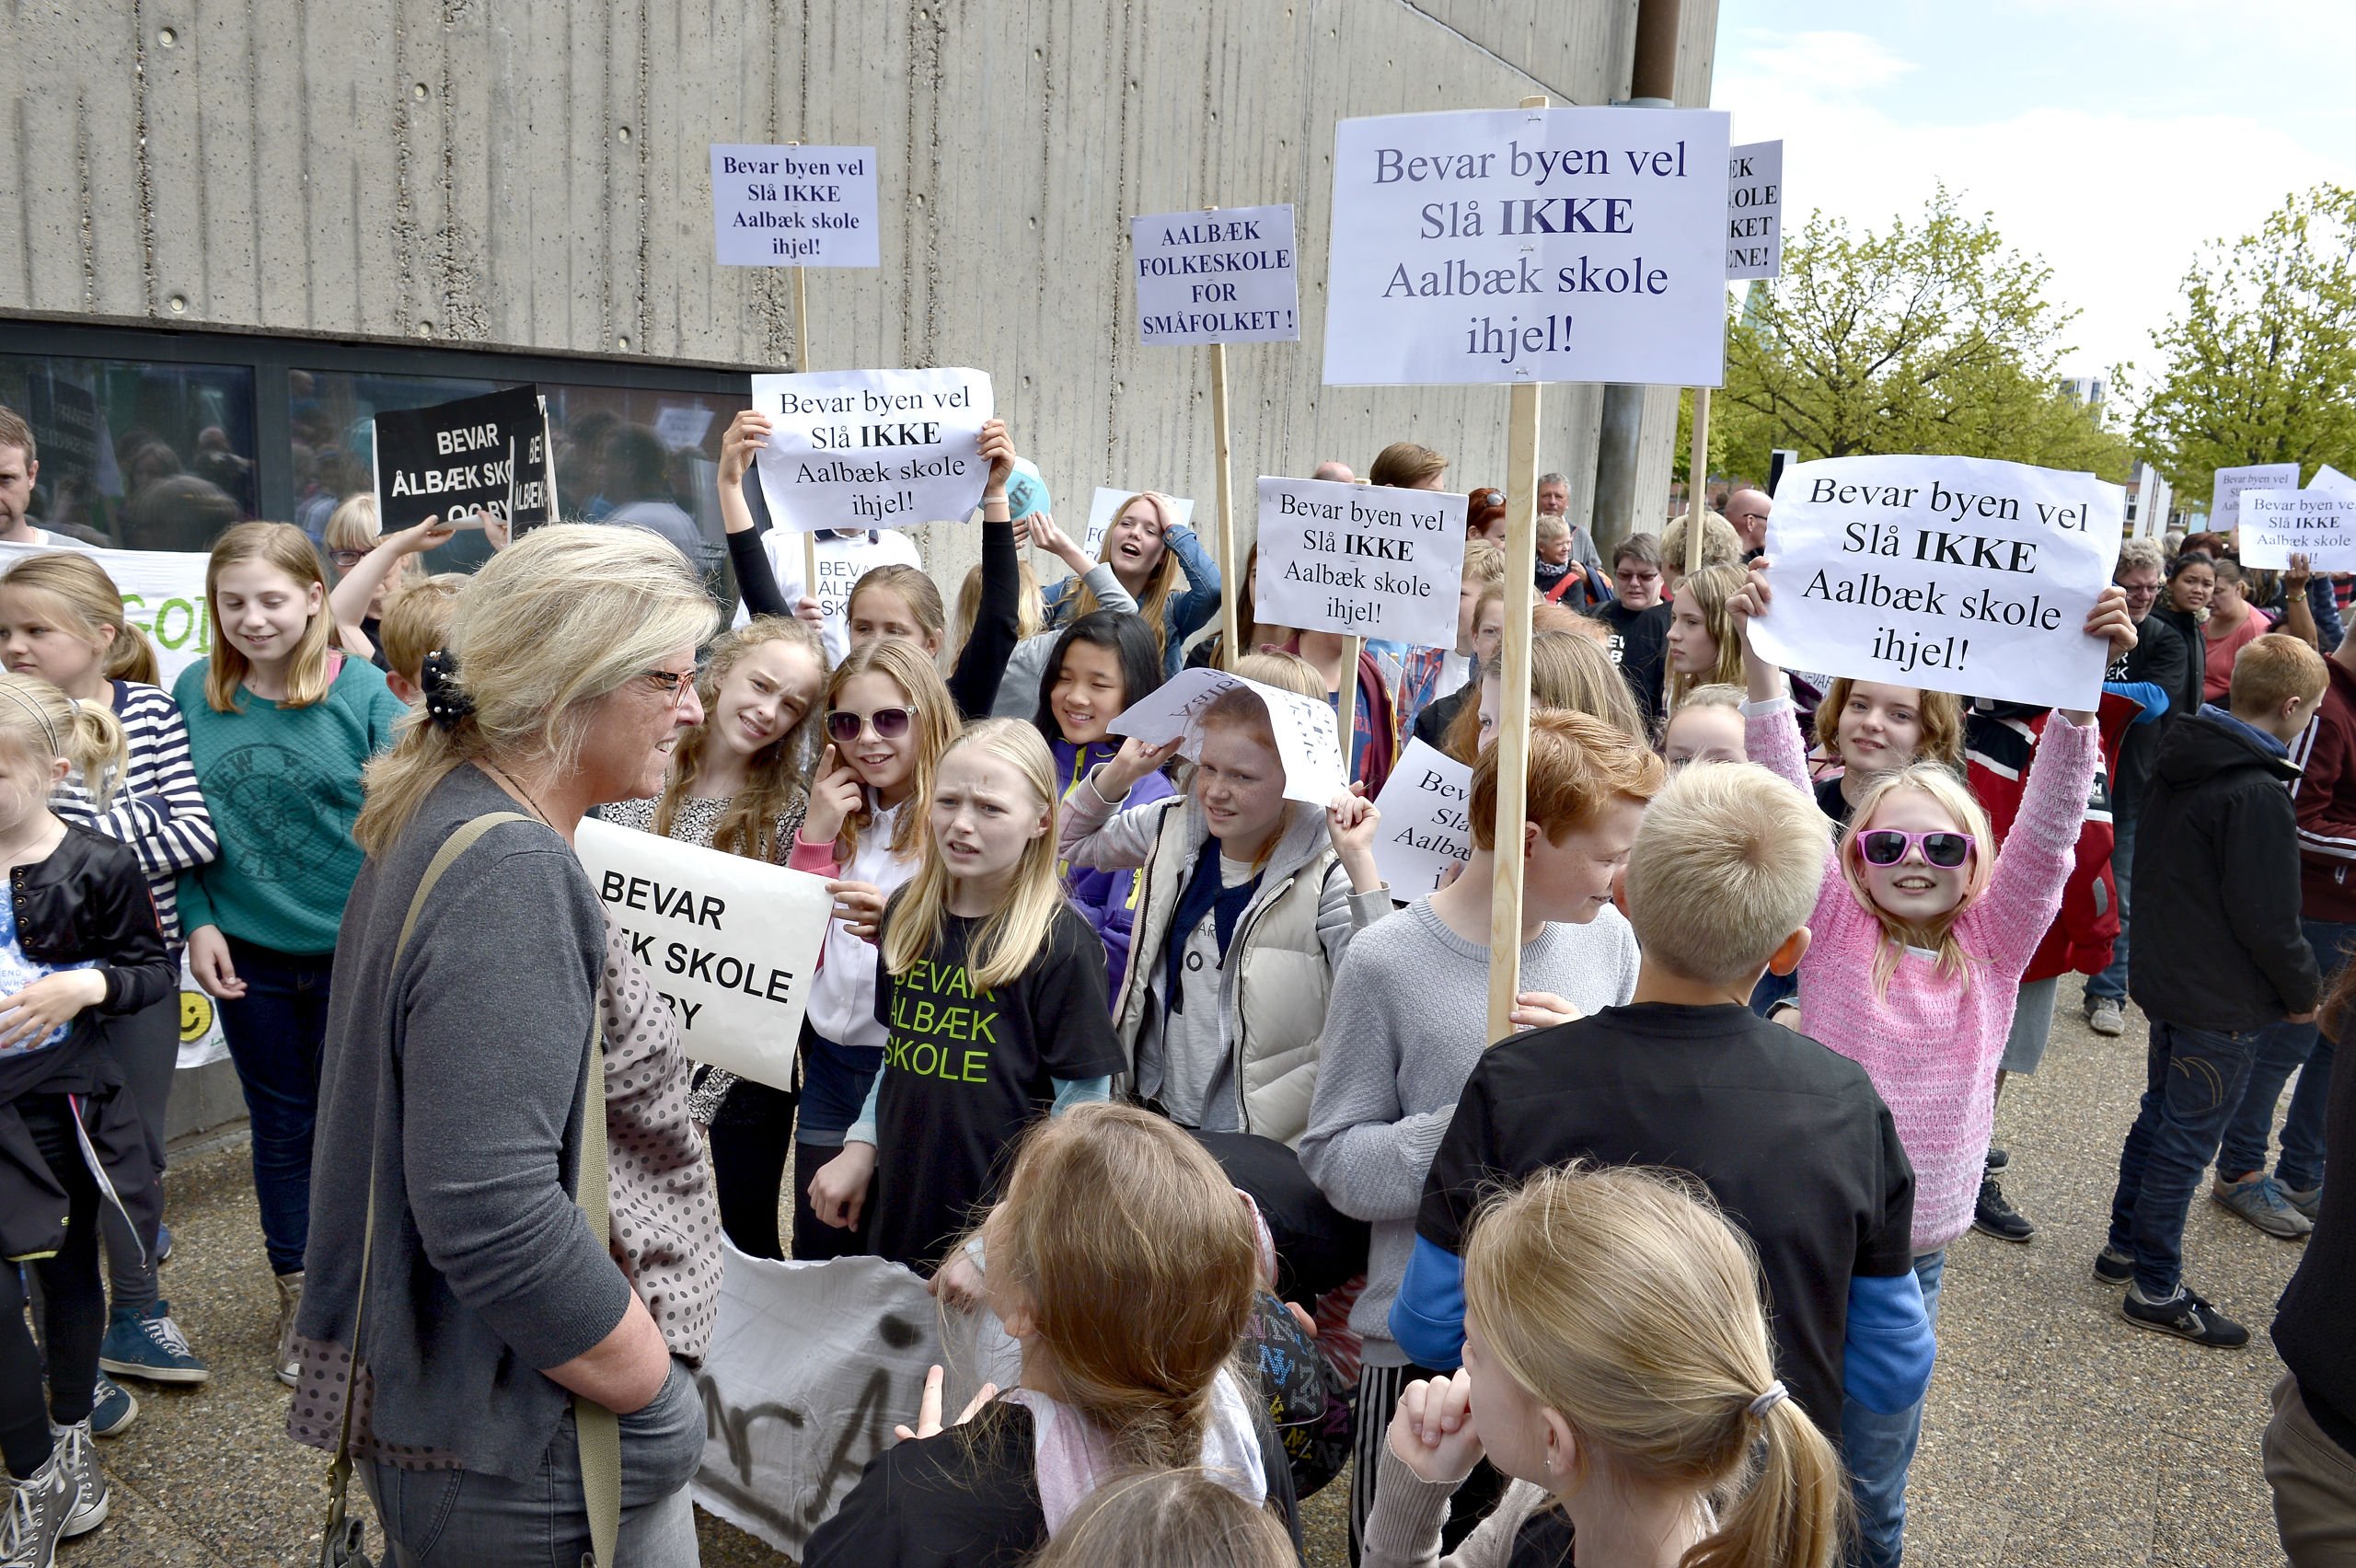 Borgere protesterede foran rådhuset i Frederikshavn